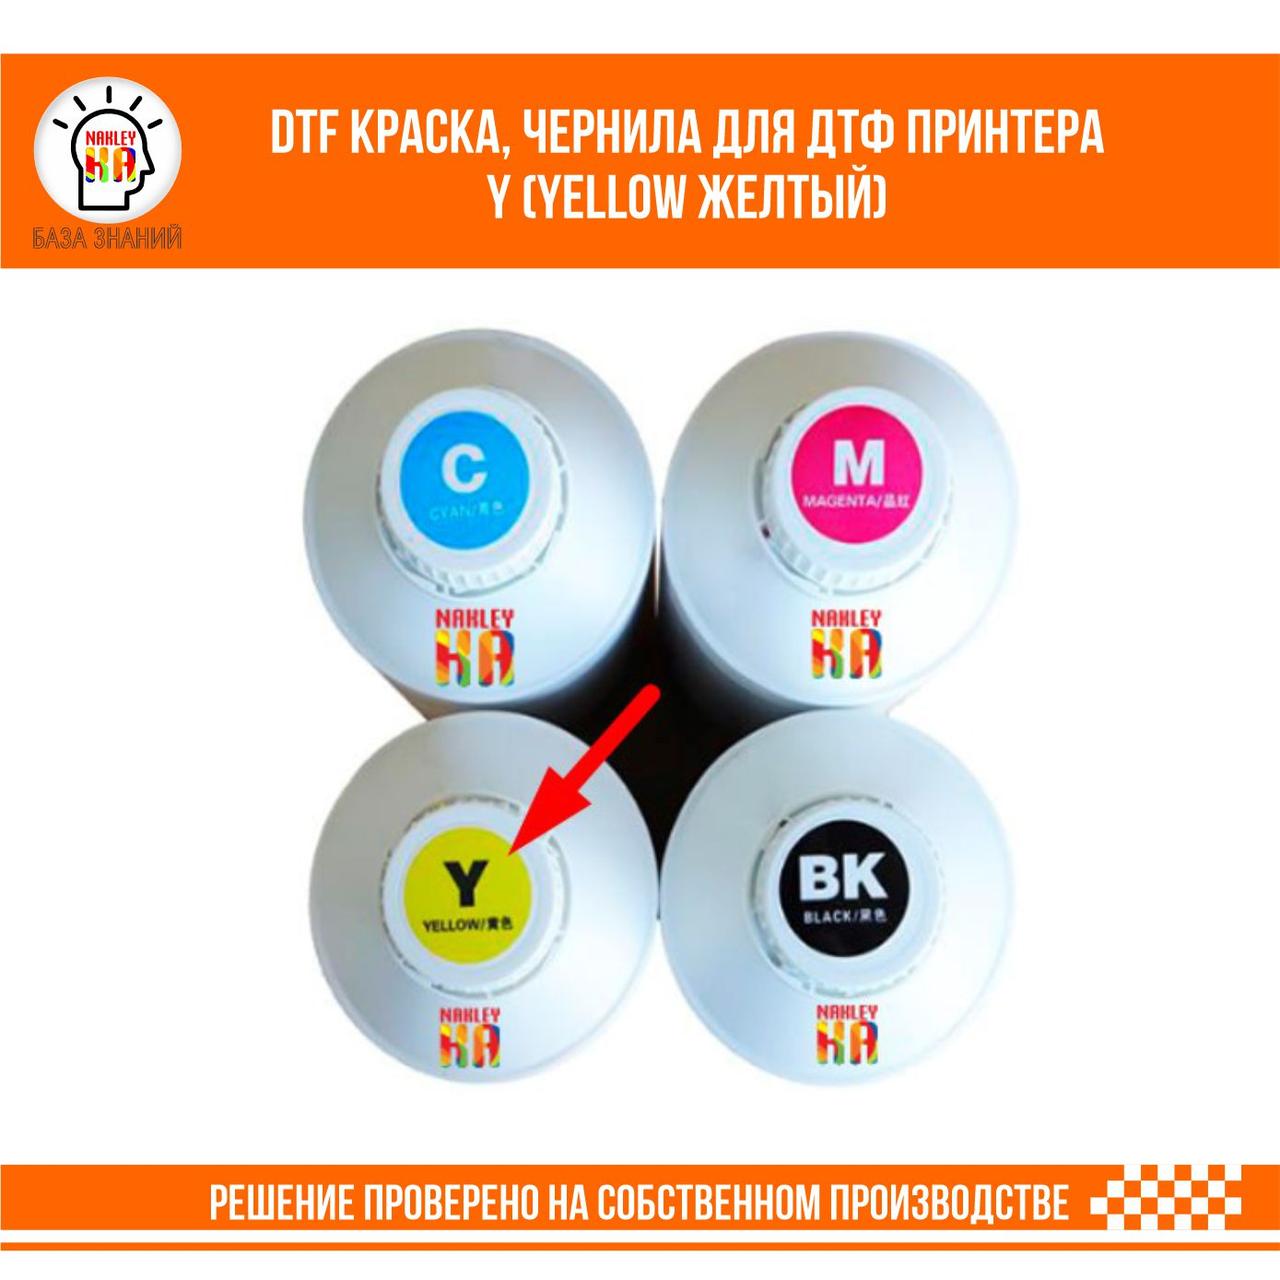 DTF краска, чернила для ДТФ принтера Y (Yellow Желтый), фото 1